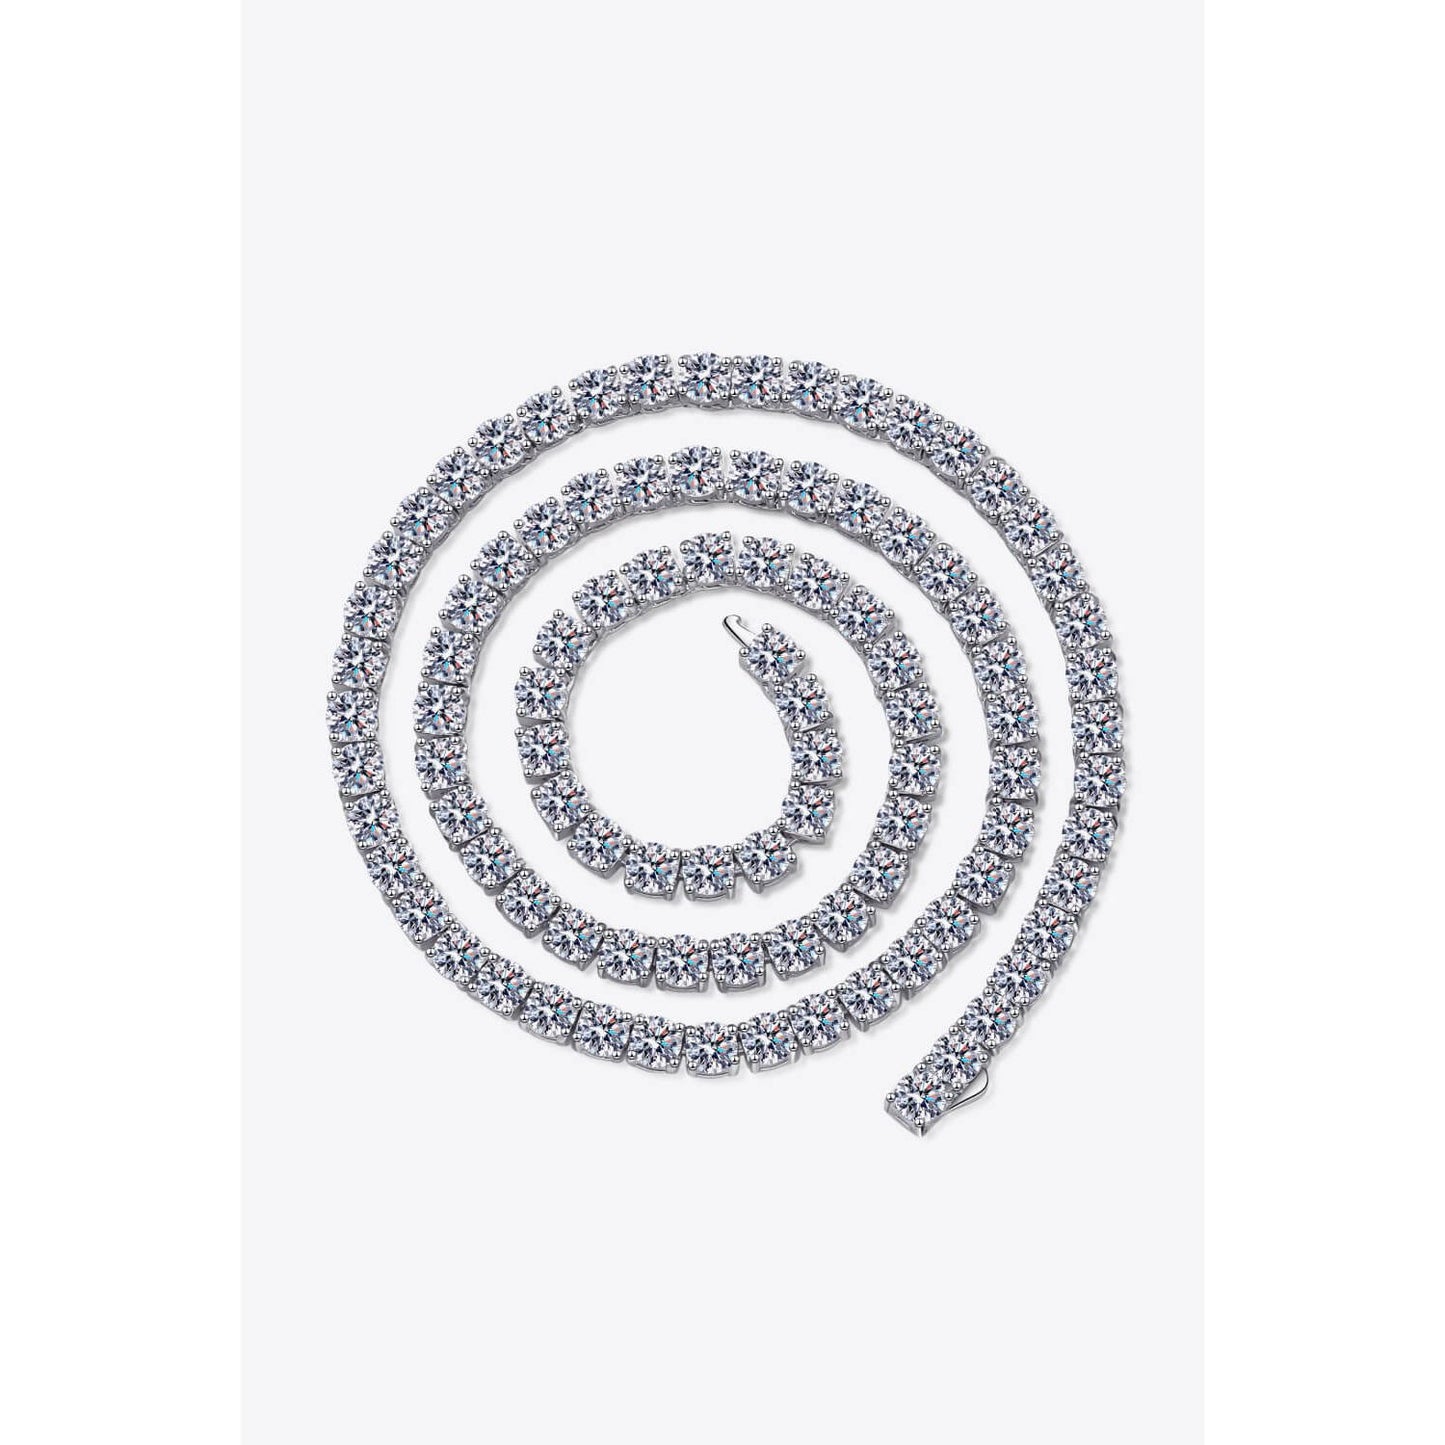 Moissanite Rhodium-Plated Necklace - TiffanyzKlozet